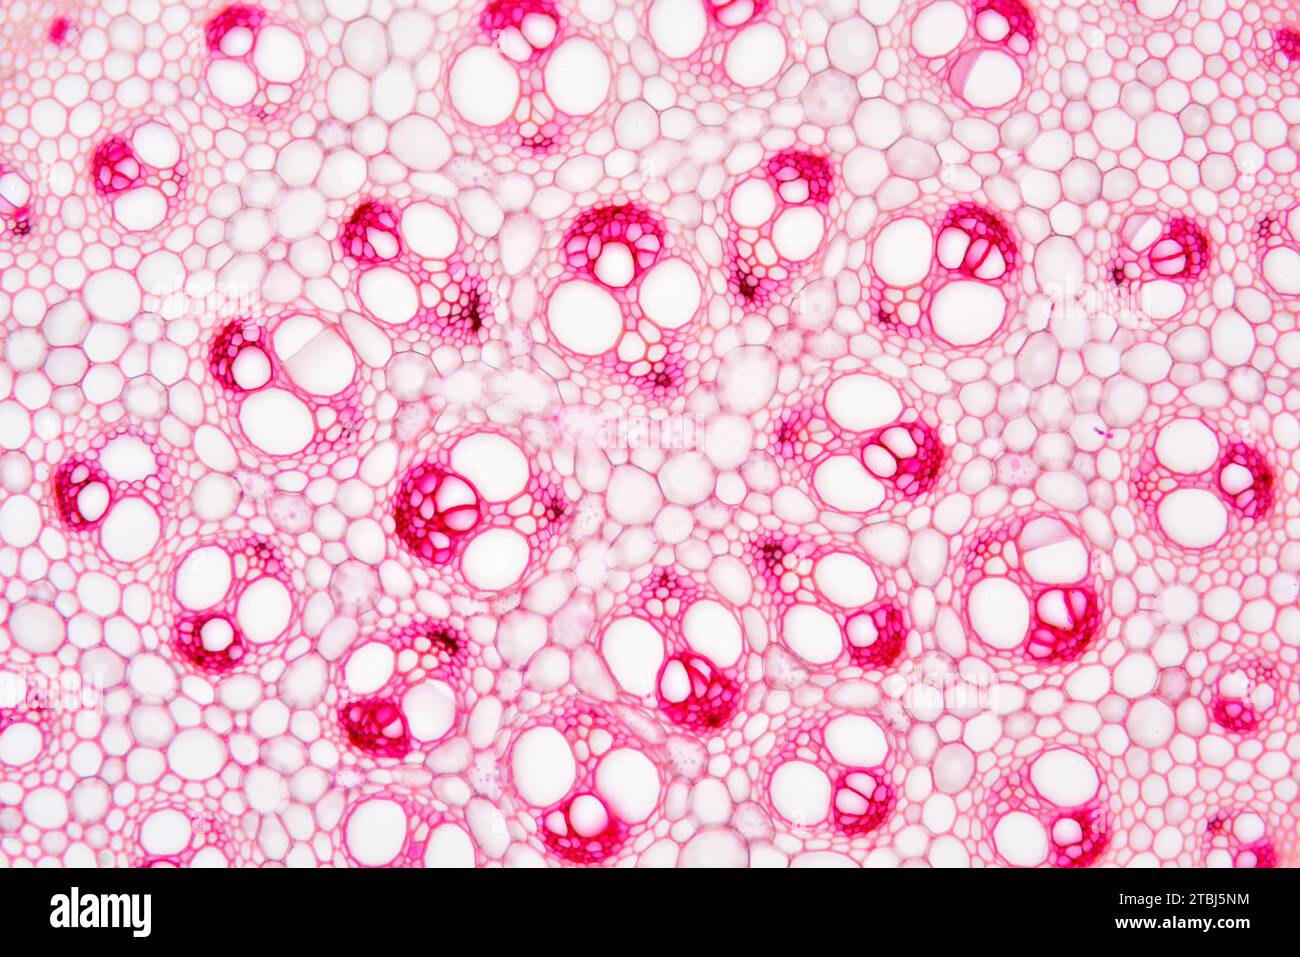 Monocot-Stamm (Smilax aspera) zeigt Kortex, Parenchym, Gefäßbündel, Phloem und Xylem. Optisches Mikroskop X100. Stockfoto